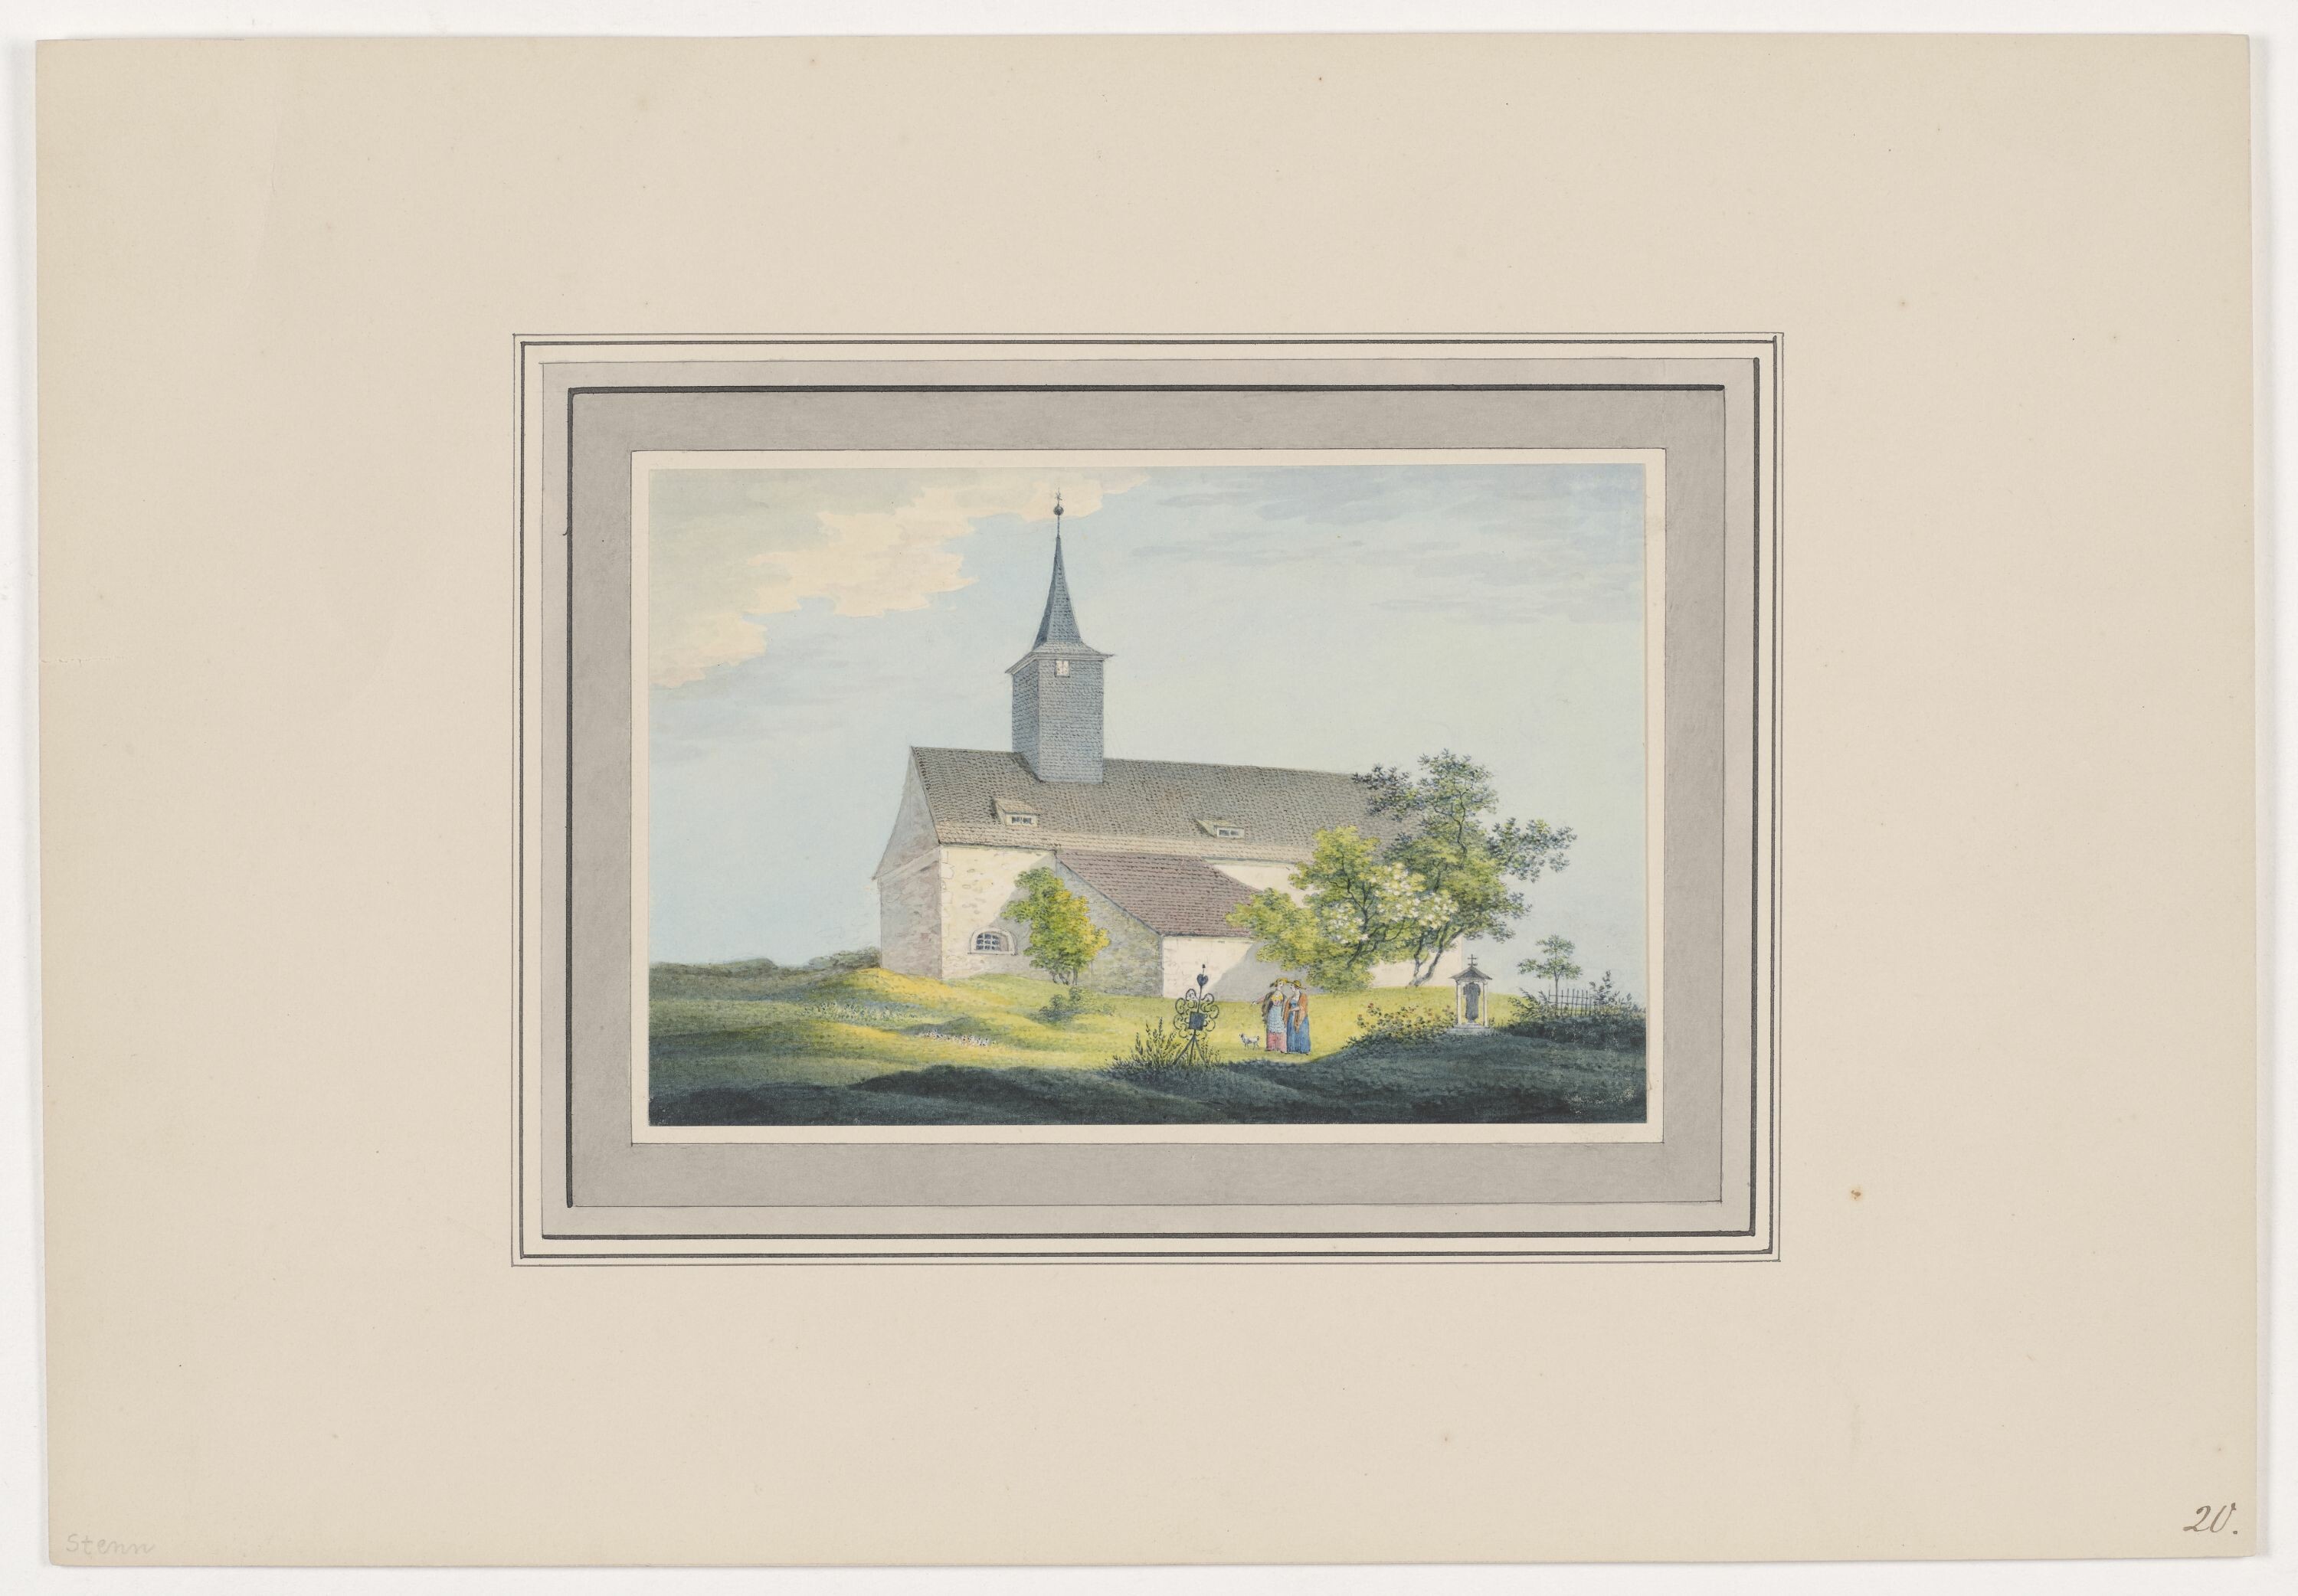 Kirche zu Stenn, aus Mappe: Dorfkirchen der Ephorie Zwickau, Blatt 20 (KUNSTSAMMLUNGEN ZWICKAU Max-Pechstein-Museum RR-F)